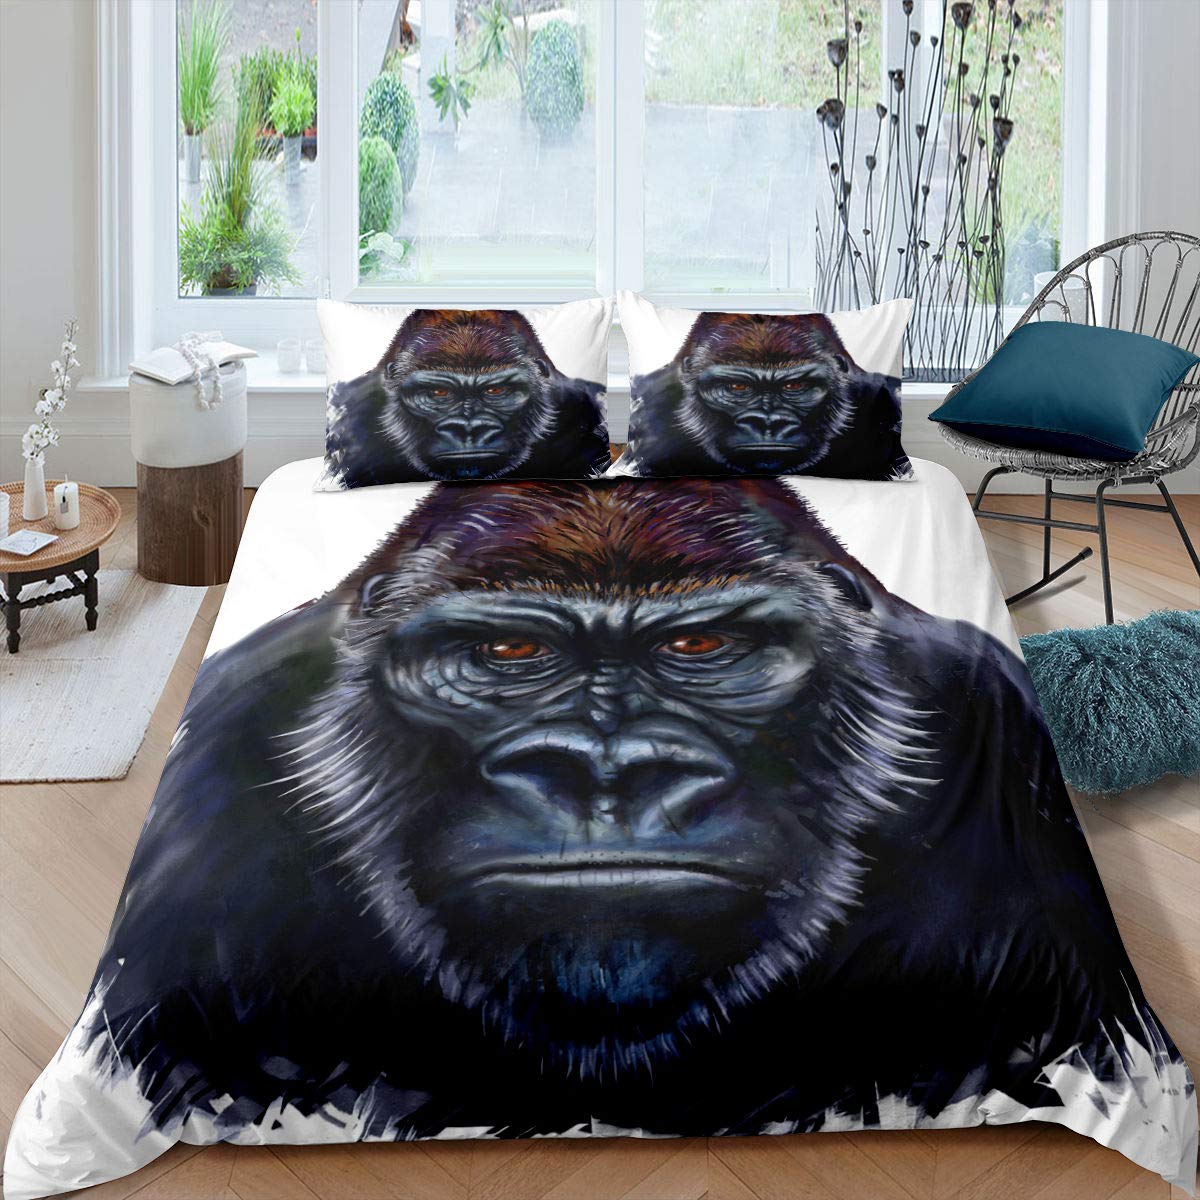 Black gorilla duvet cover